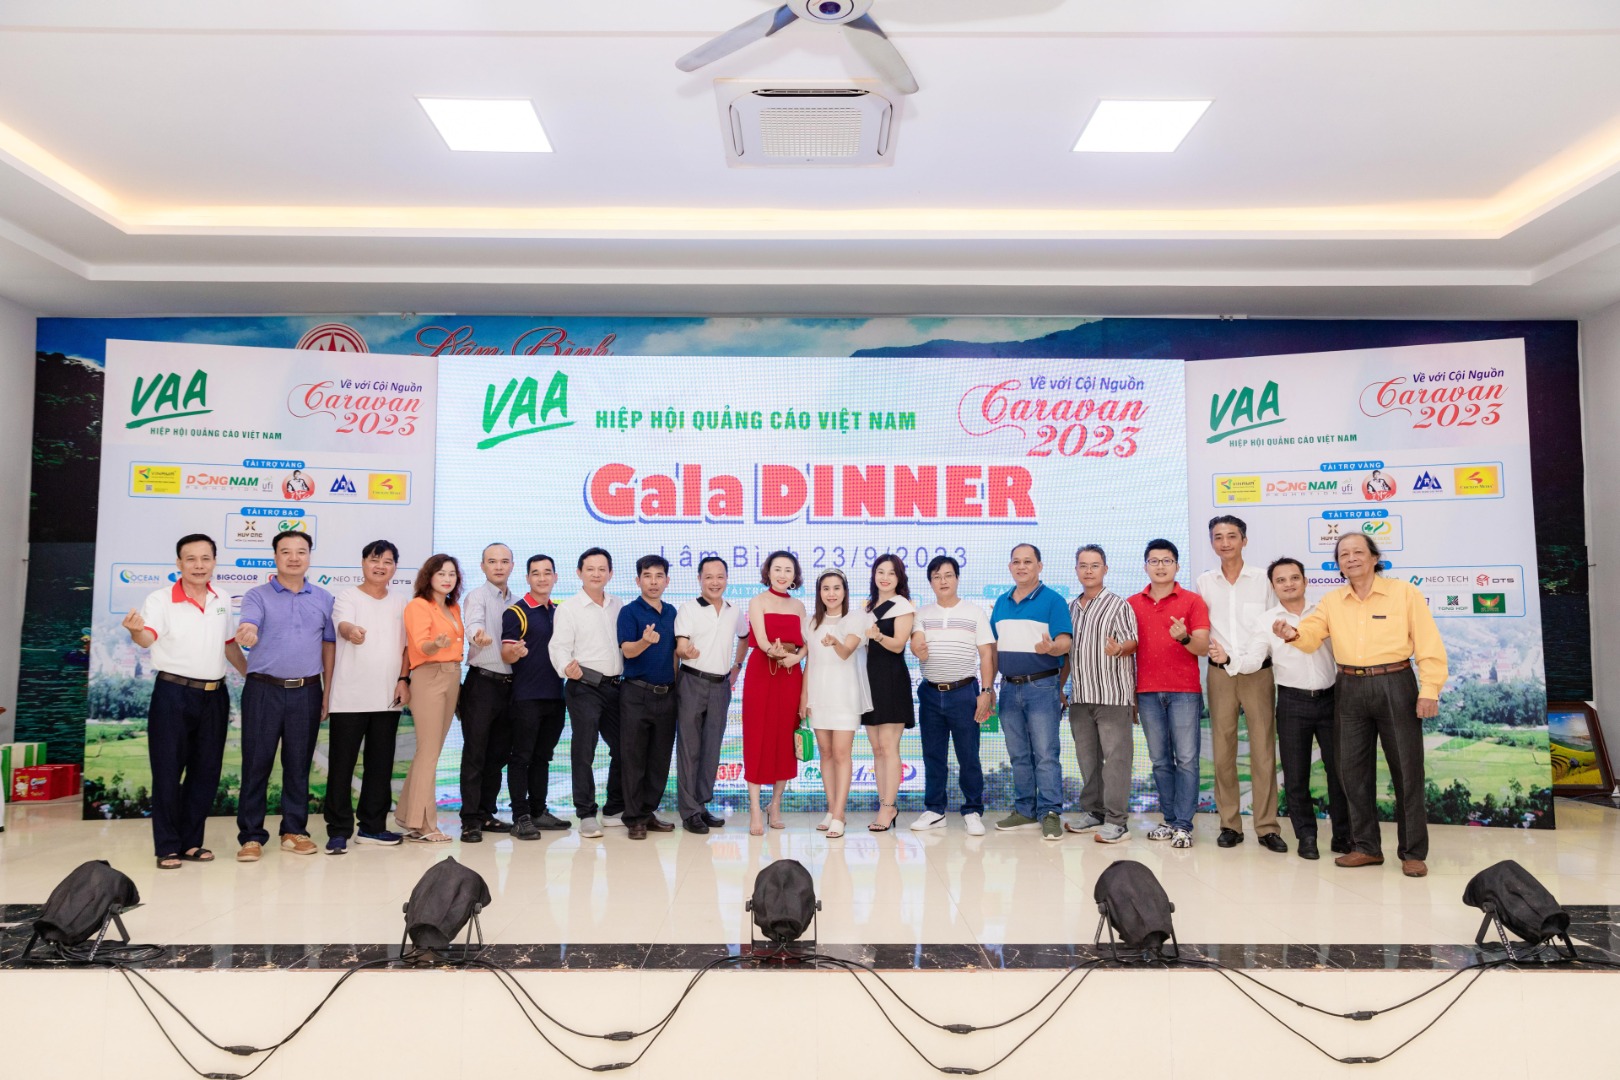 Hiệp hội Quảng cáo Việt Nam: Hành trình Caravan 2023 về với cội nguồn